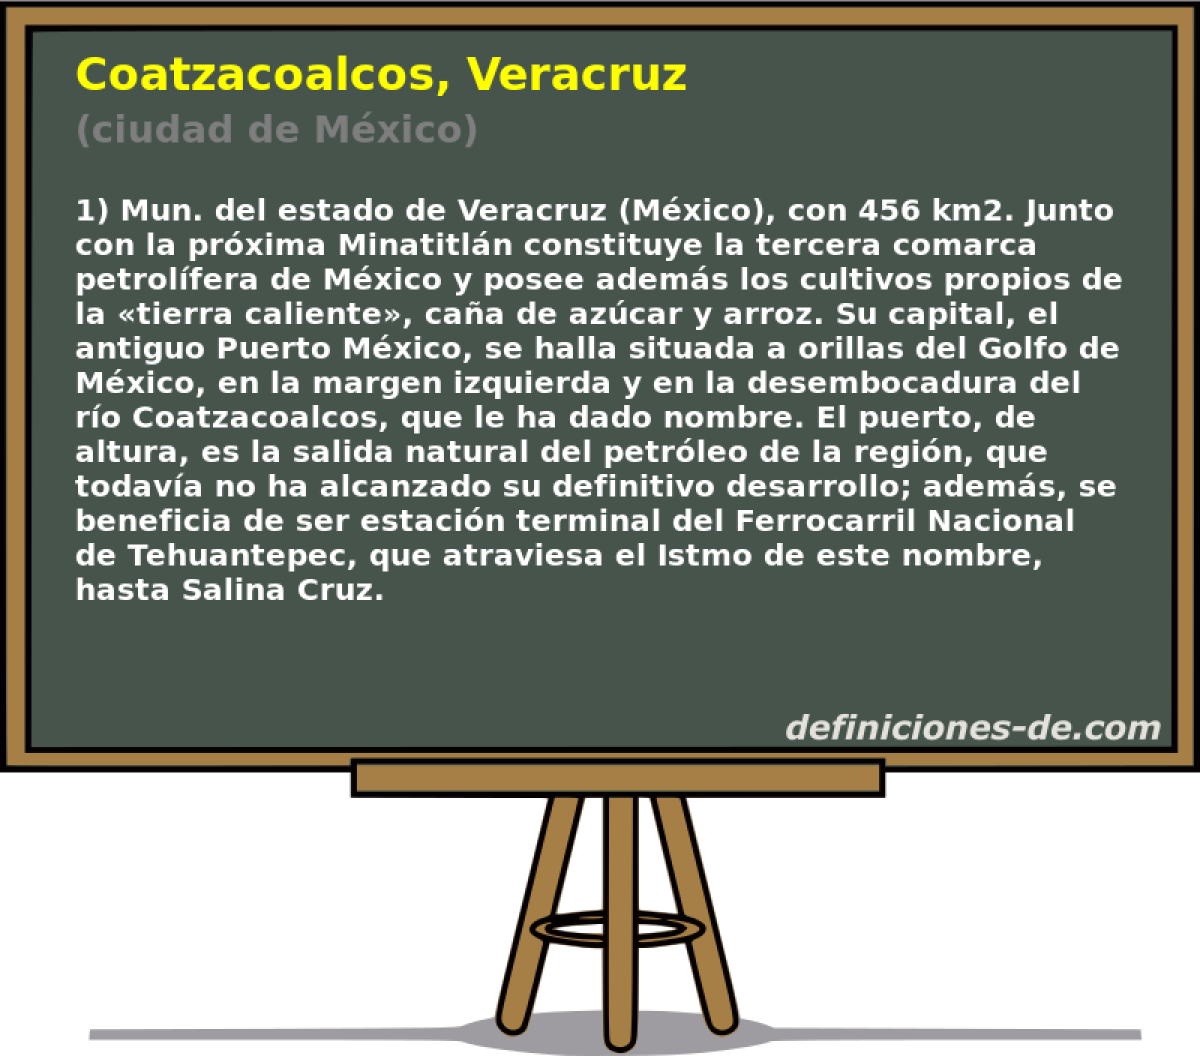 Coatzacoalcos, Veracruz (ciudad de Mxico)